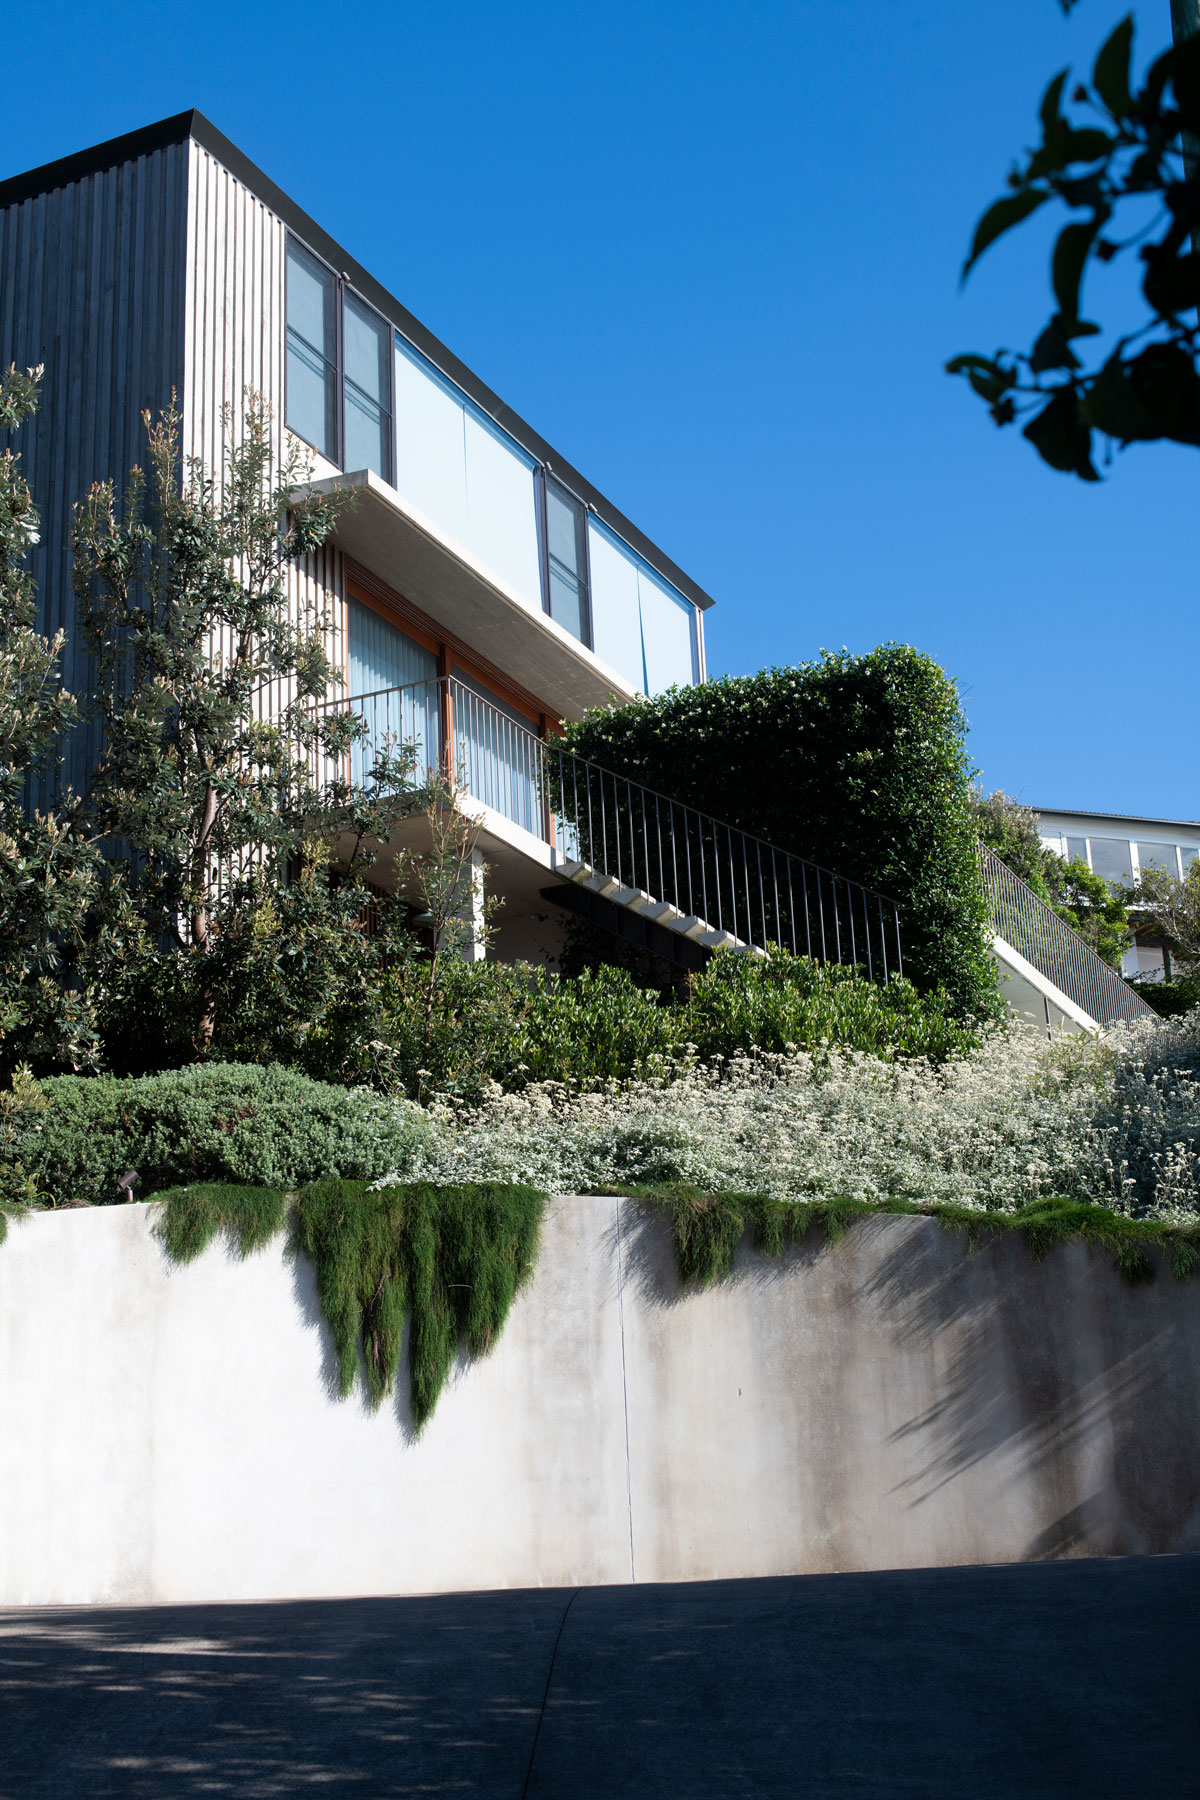 Sydney Garden Designer - Landscape Design Sydney & Central Coast